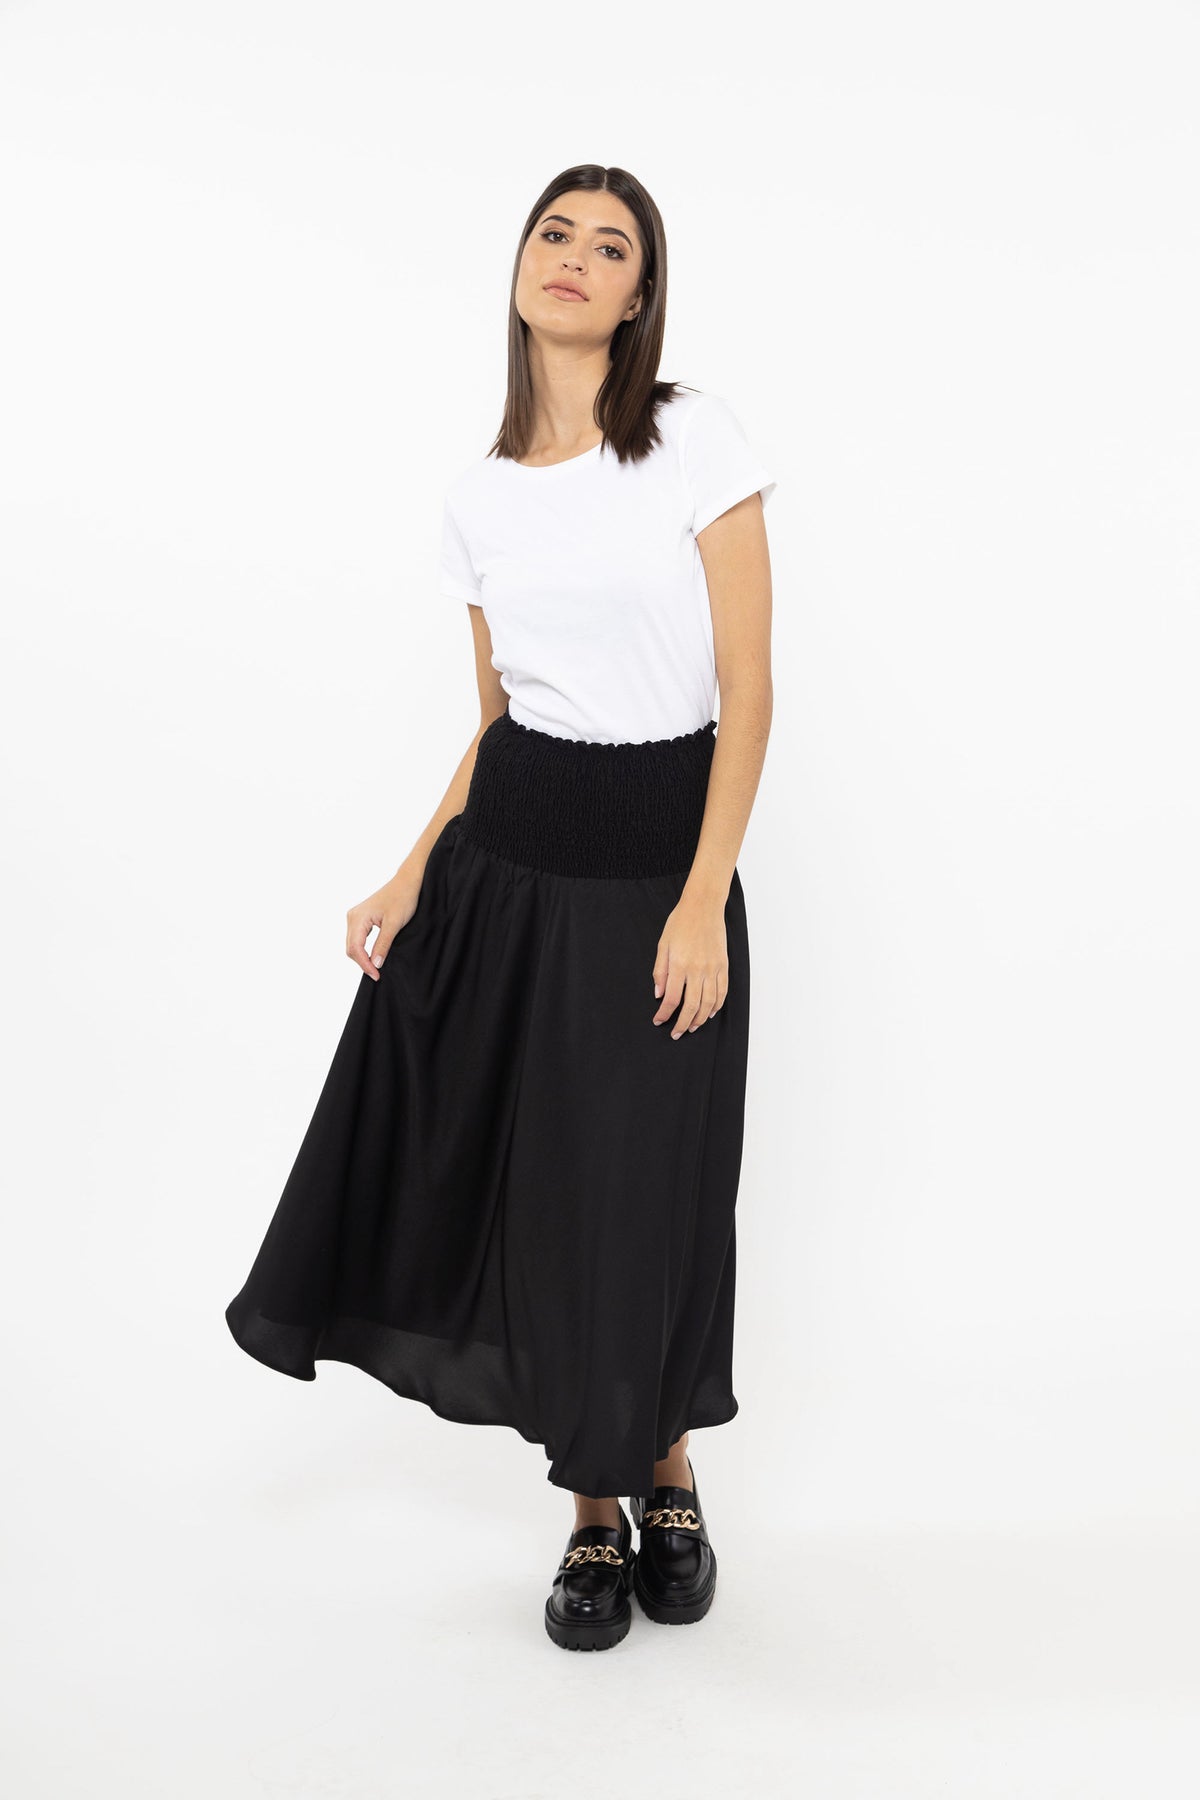 Dazzling Maxi Skirt Black Washer Satin